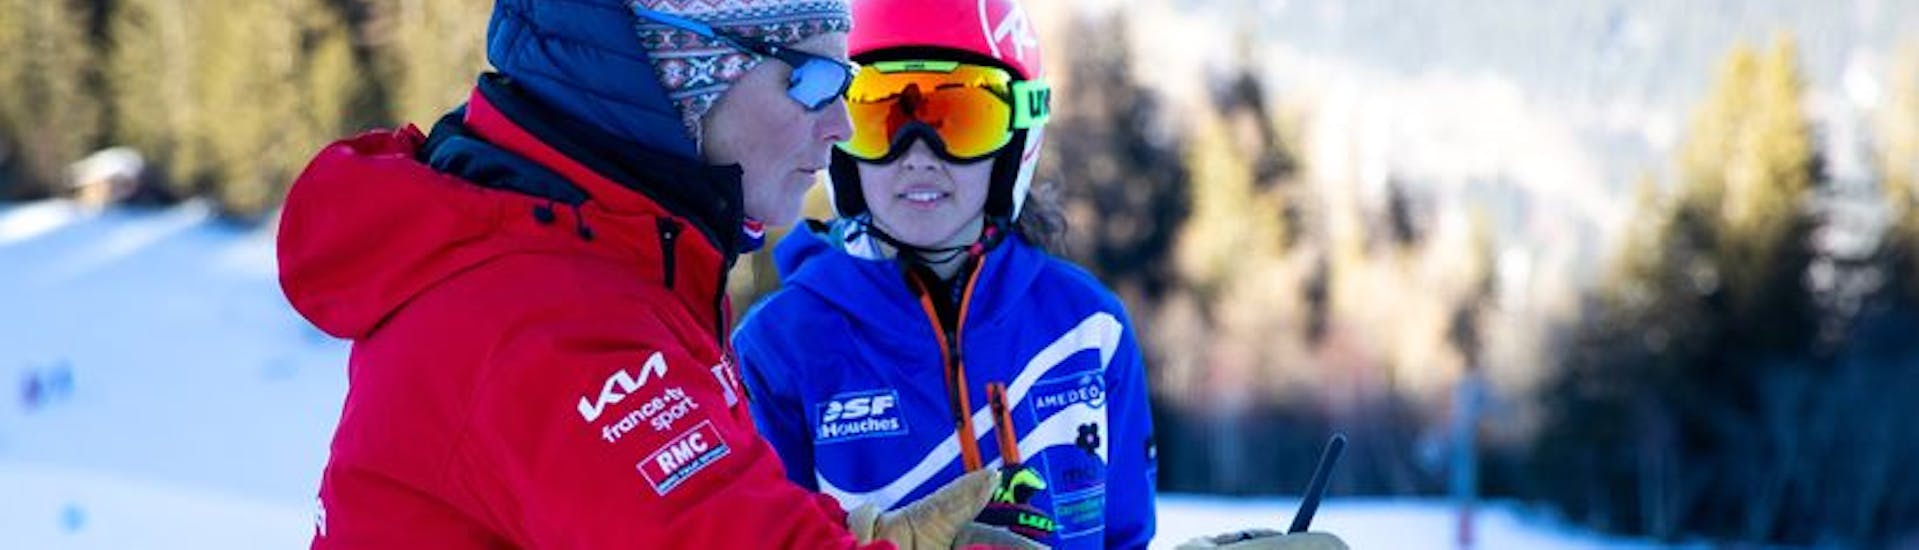 Privater Kinder-Skikurs ab 3 Jahren für alle Levels mit ESF Les Houches.